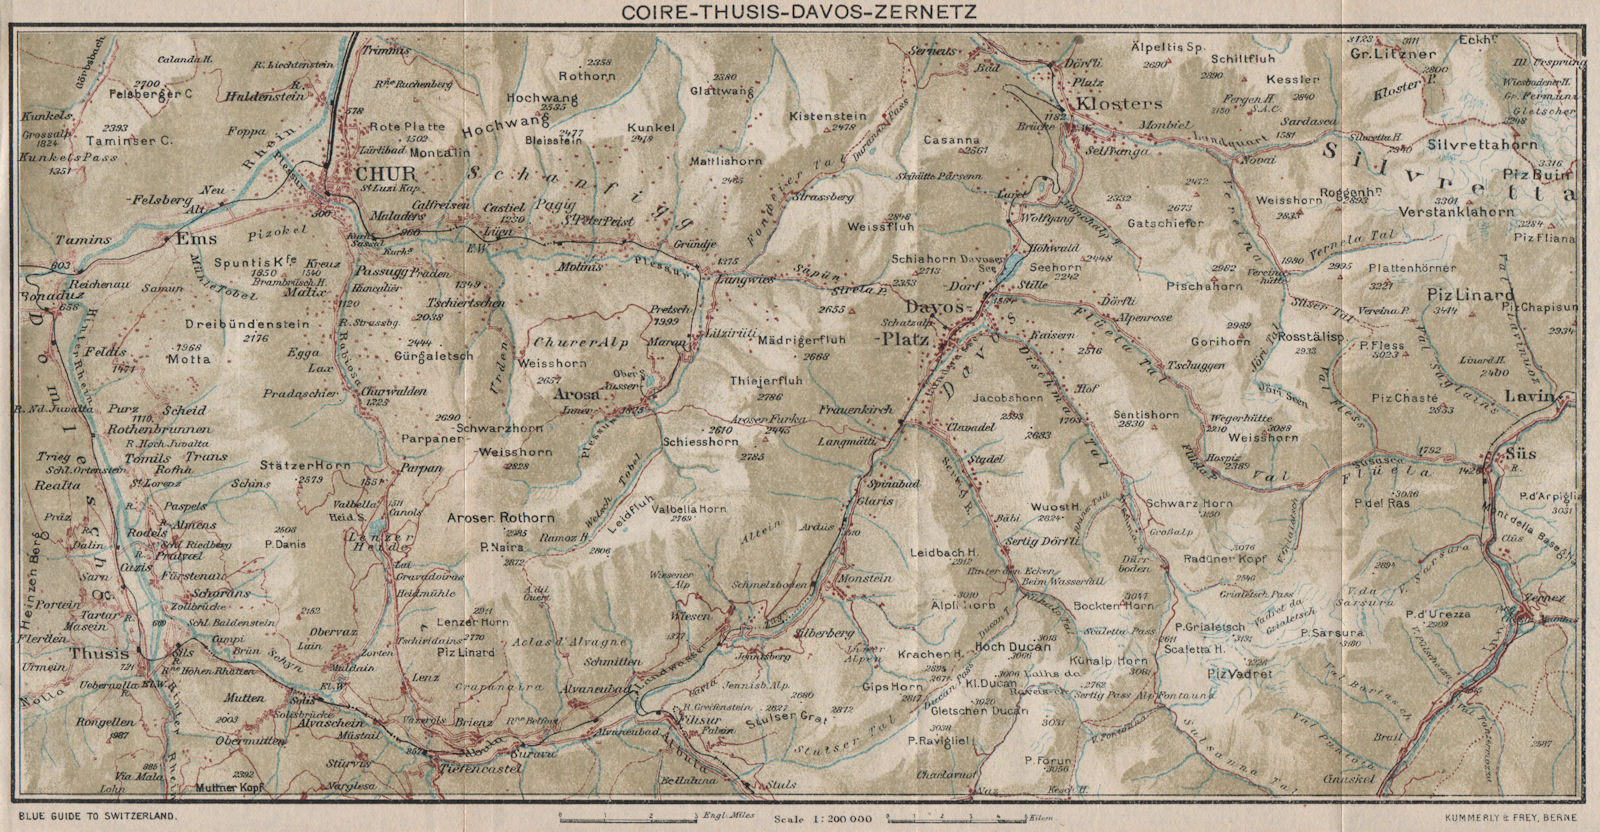 CHUR DAVOS ZERNETZ. Klosters Arosa Churwalden Lenzerheide Valbella 1930 map